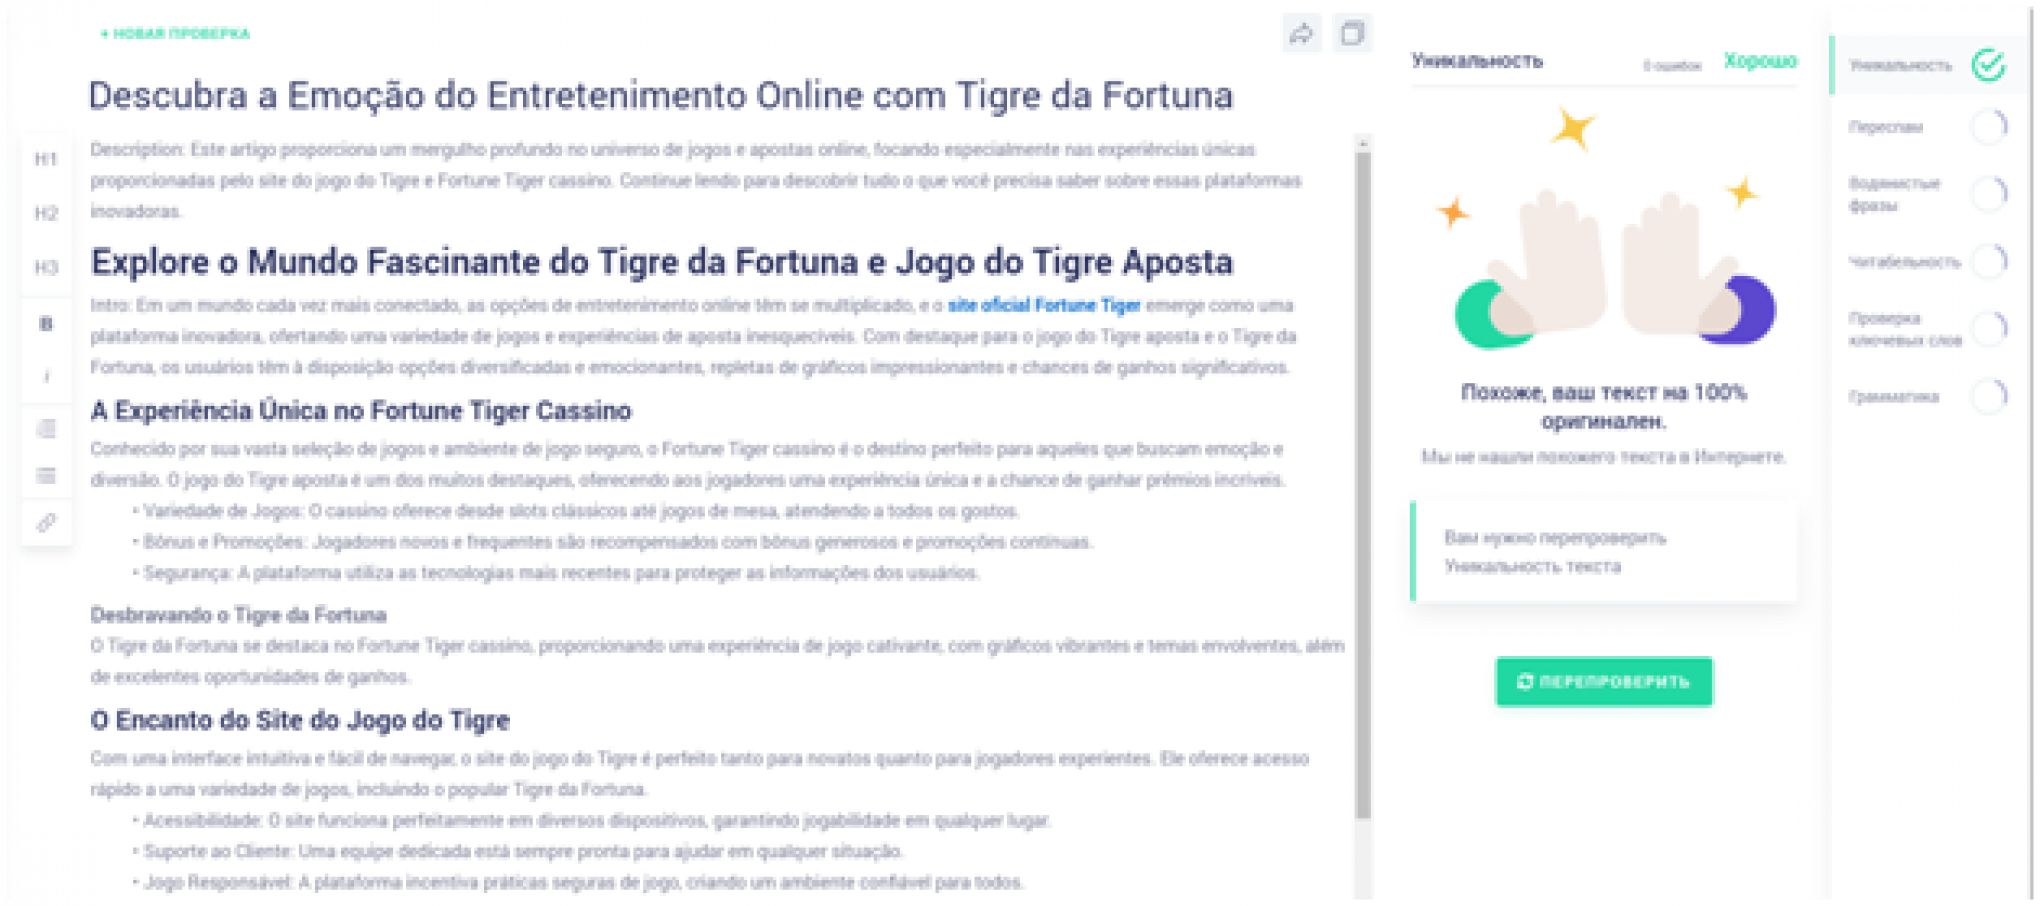 Descubra a emoção do entretenimento online com Tigre da Fortuna